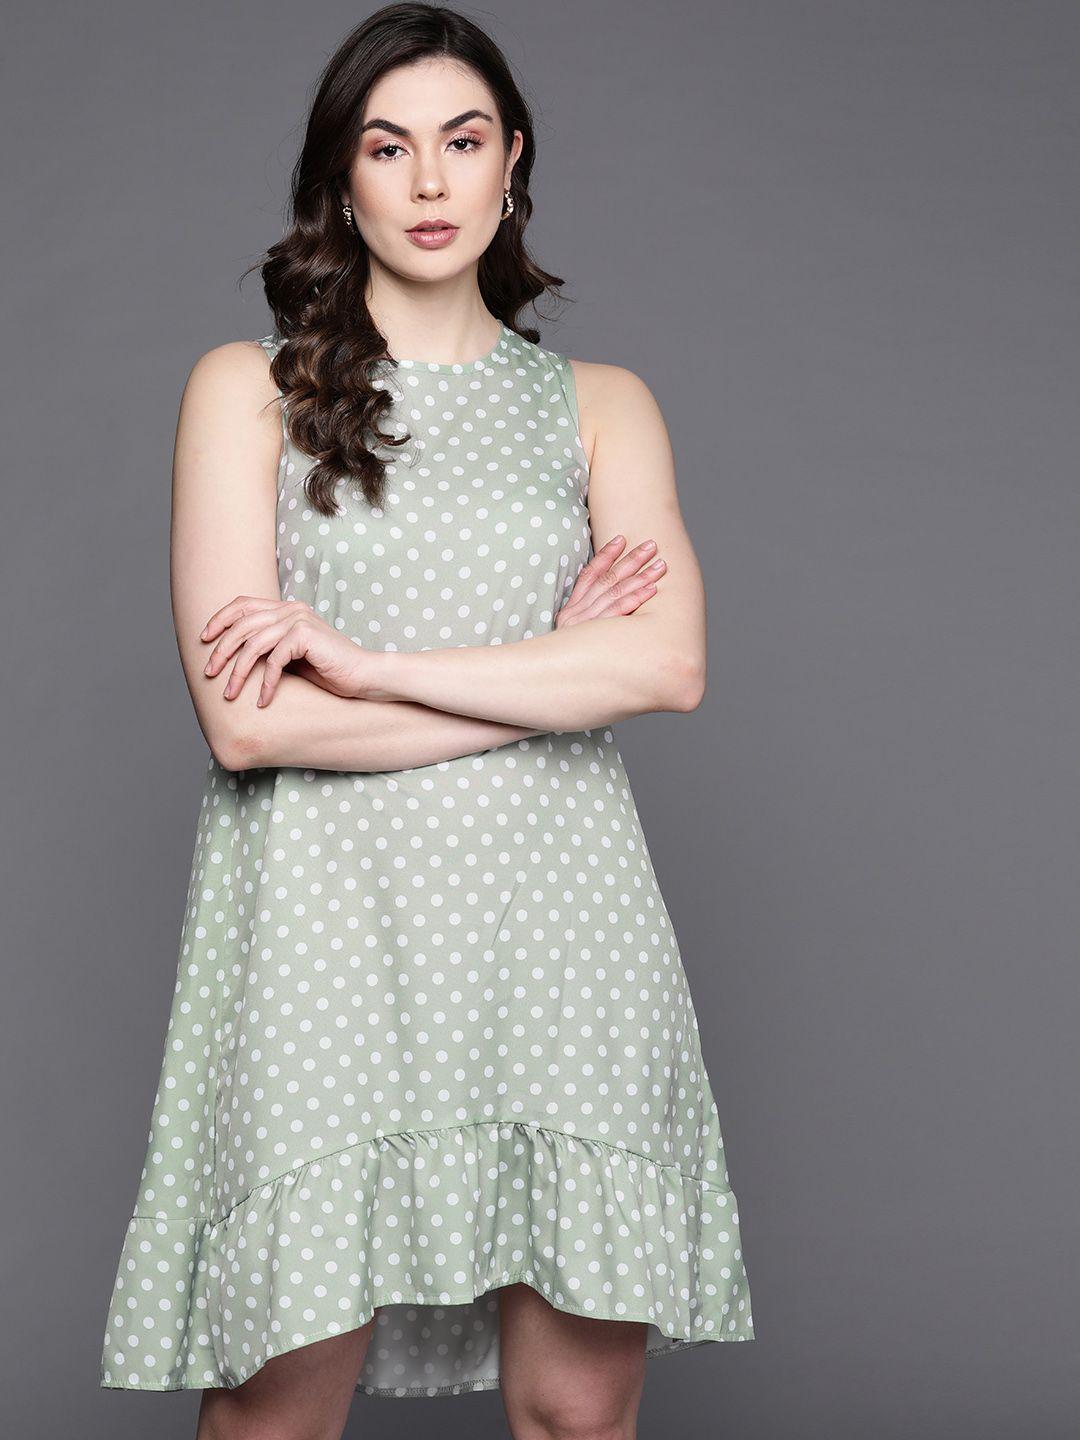 jc mode green & white polka dot printed a-line dress